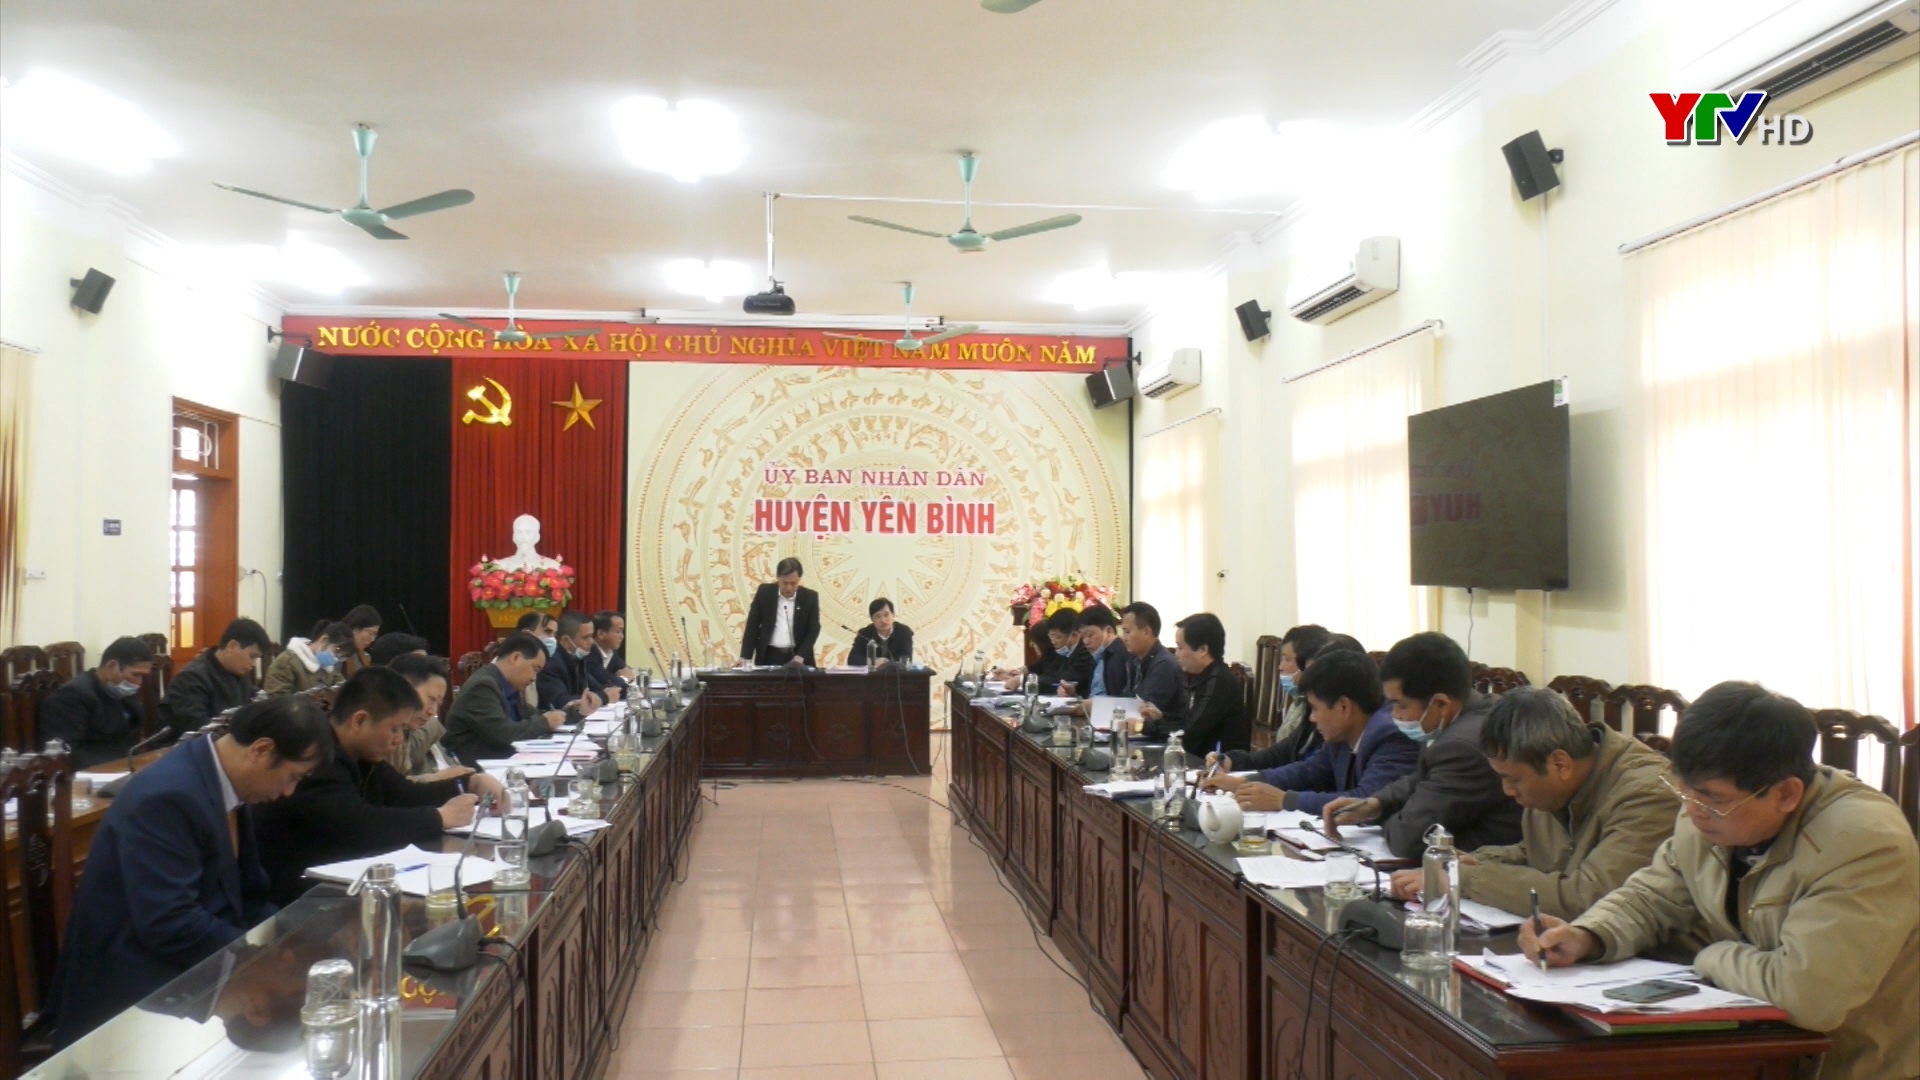 Huyện Yên Bình bàn các giải pháp đẩy nhanh tiến xây dựng nông thôn mới năm 2021